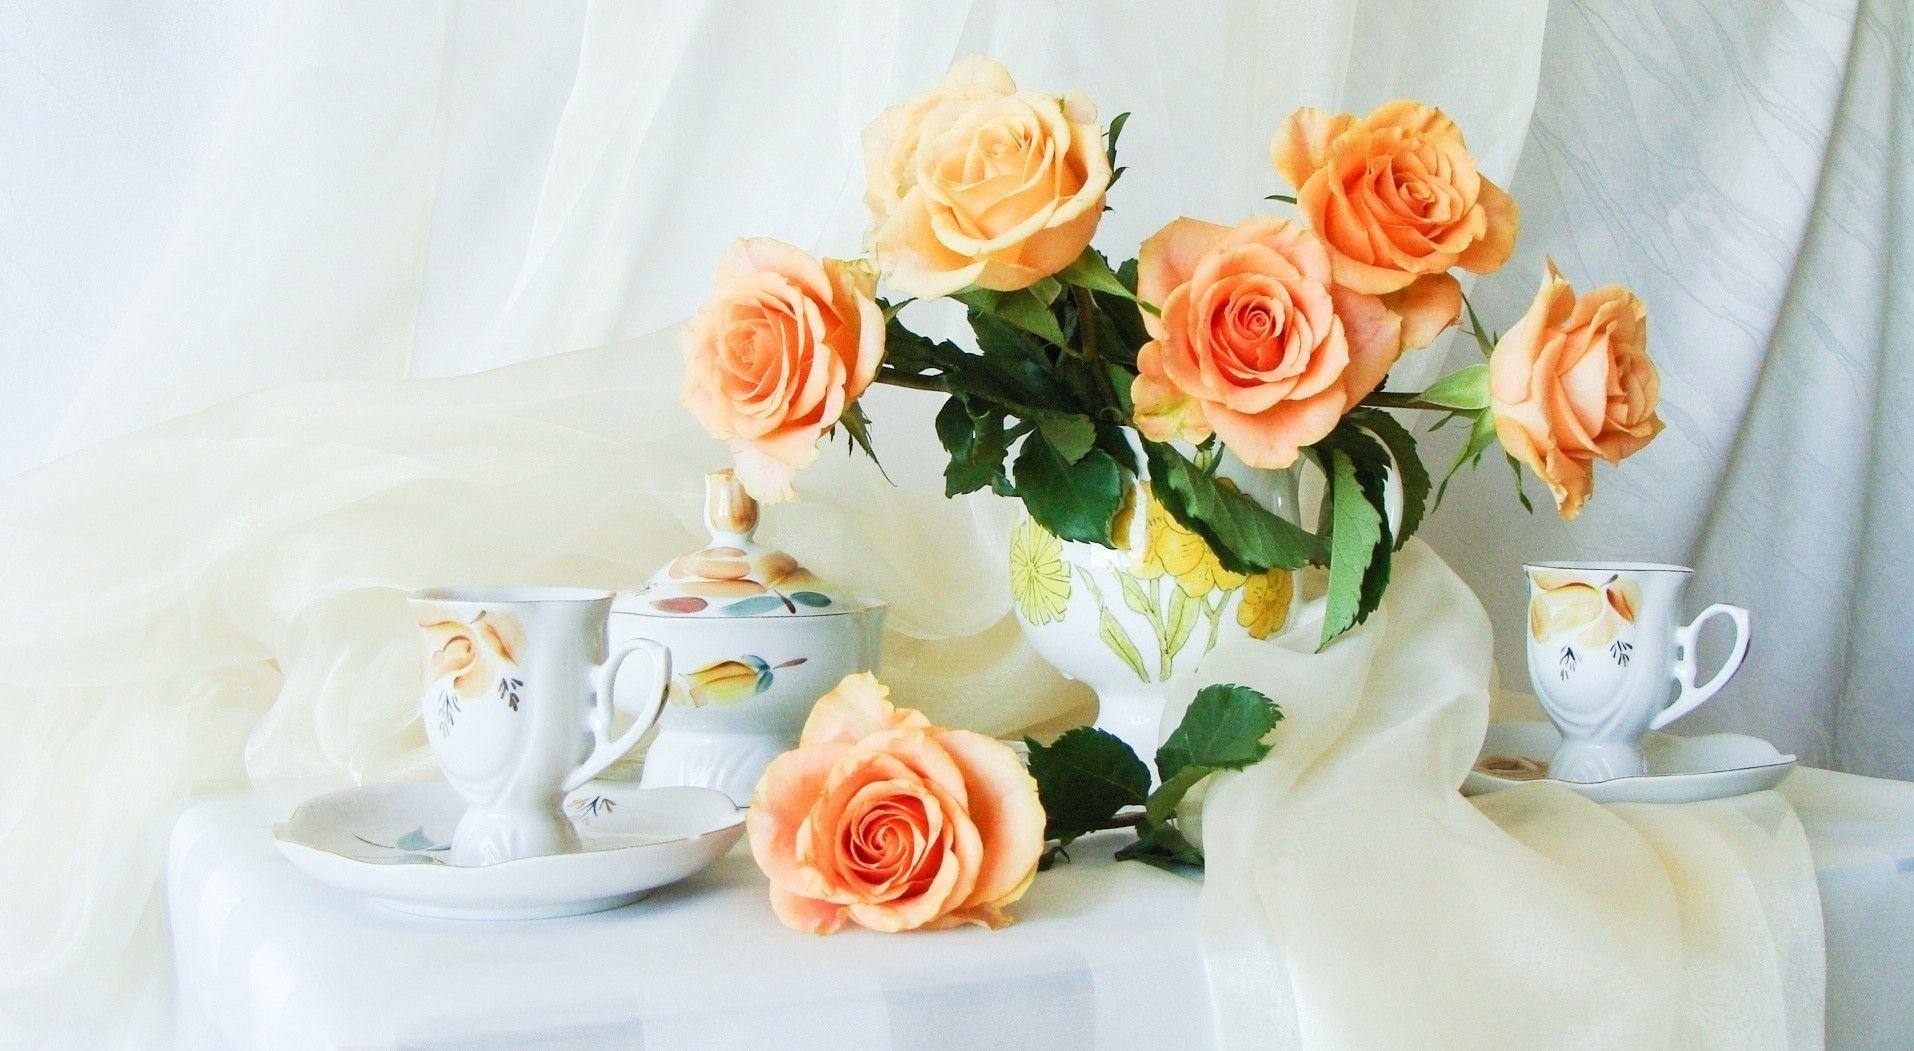 Flower Andonia Roses Delicate Soft Vase Flowers Time Tea Feminine